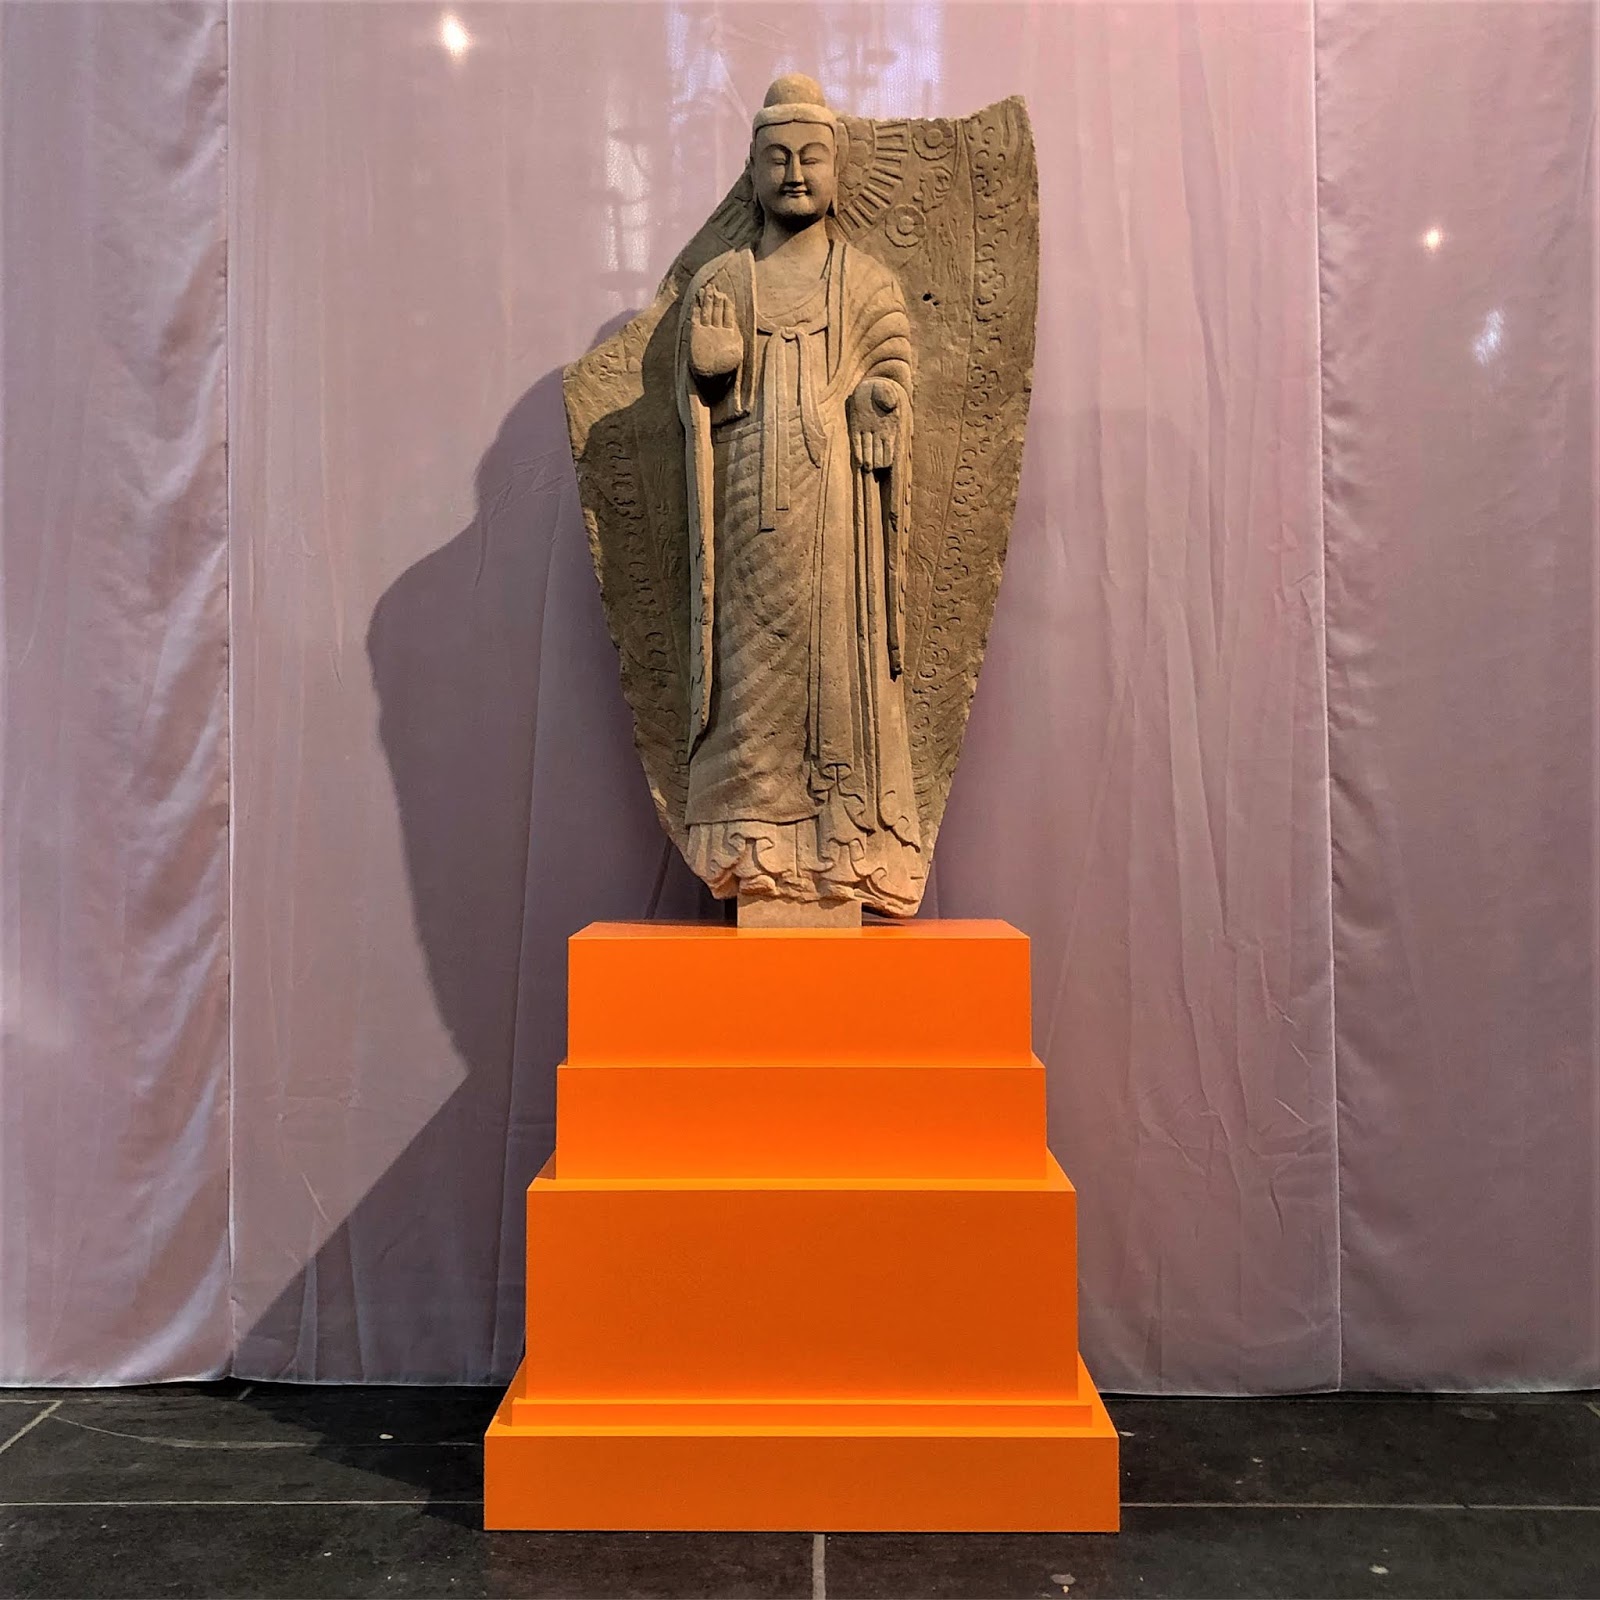 Sjah Antibiotica Geladen Het Leven van Boeddha, de weg naar nu' in de Nieuwe Kerk in Amsterdam |  agreylady